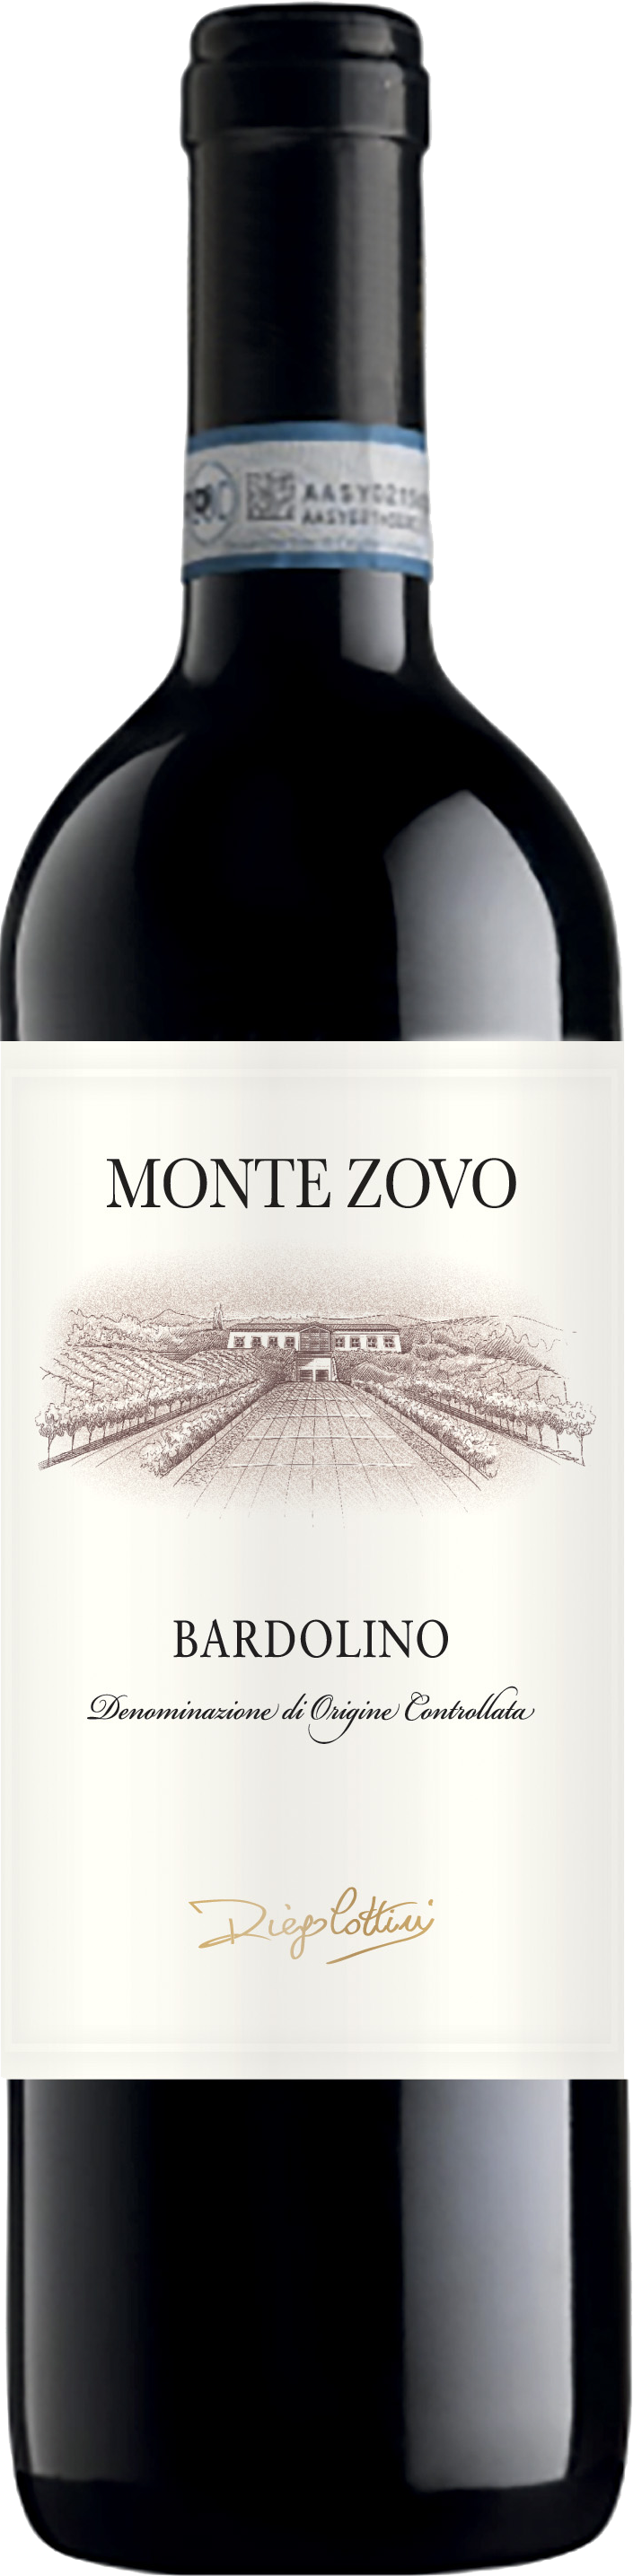 Monte Zovo - Bardolino DOC 2020